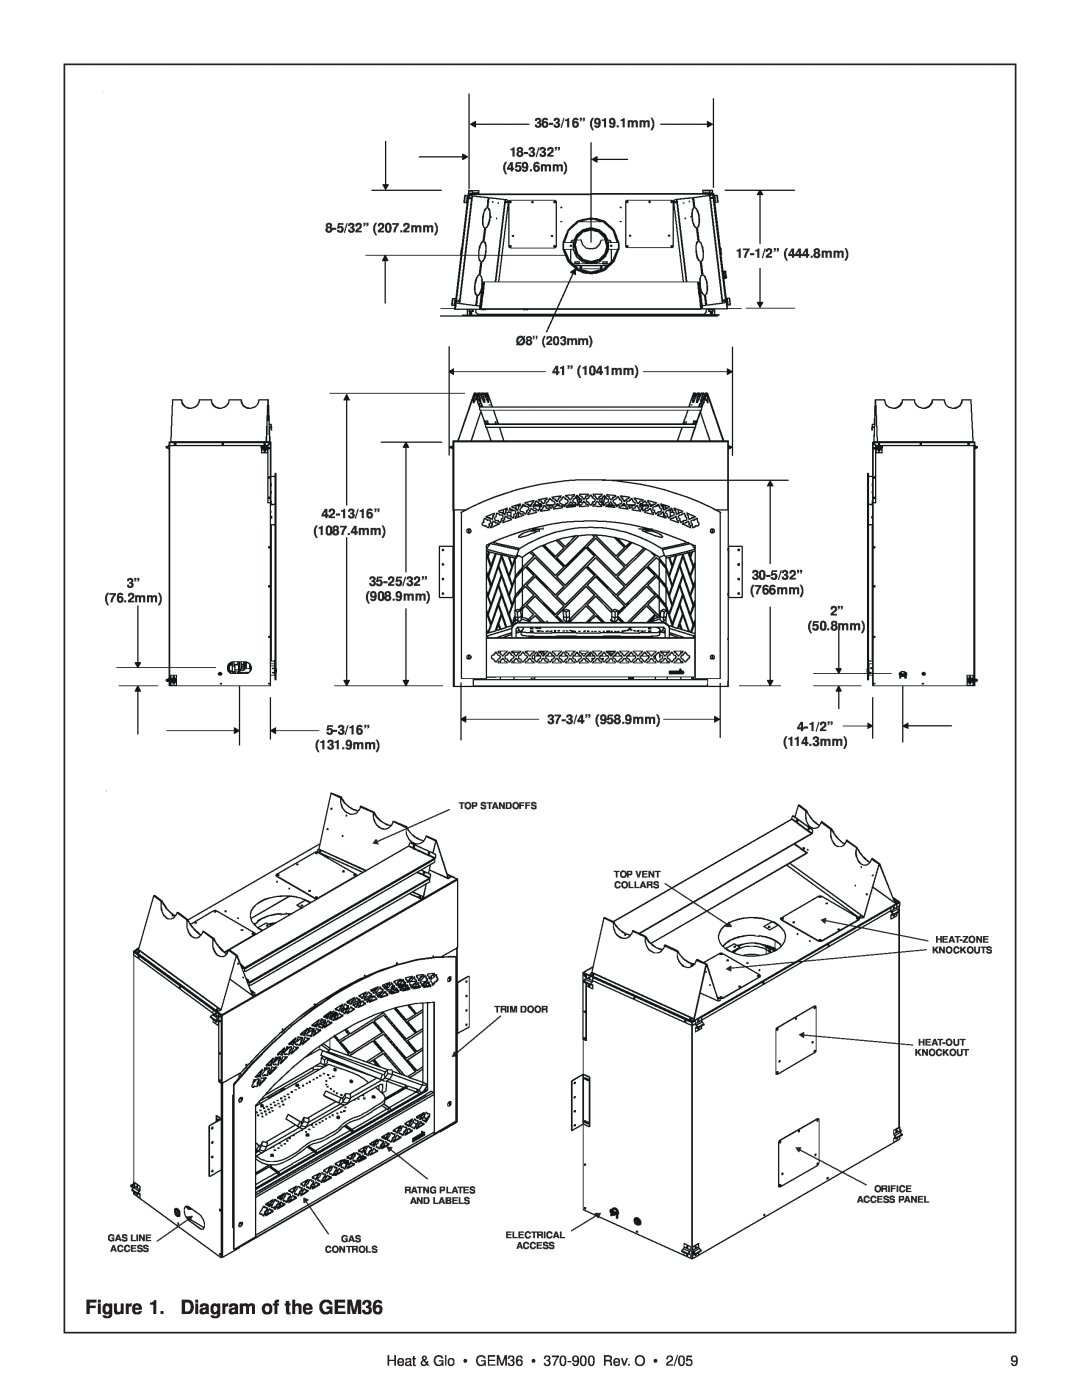 Heat & Glo LifeStyle manual Heat & Glo GEM36 370-900Rev. O 2/05, 36-3/16”919.1mm, 8-5/32”207.2mm, 41” 1041mm, 42-13/16” 